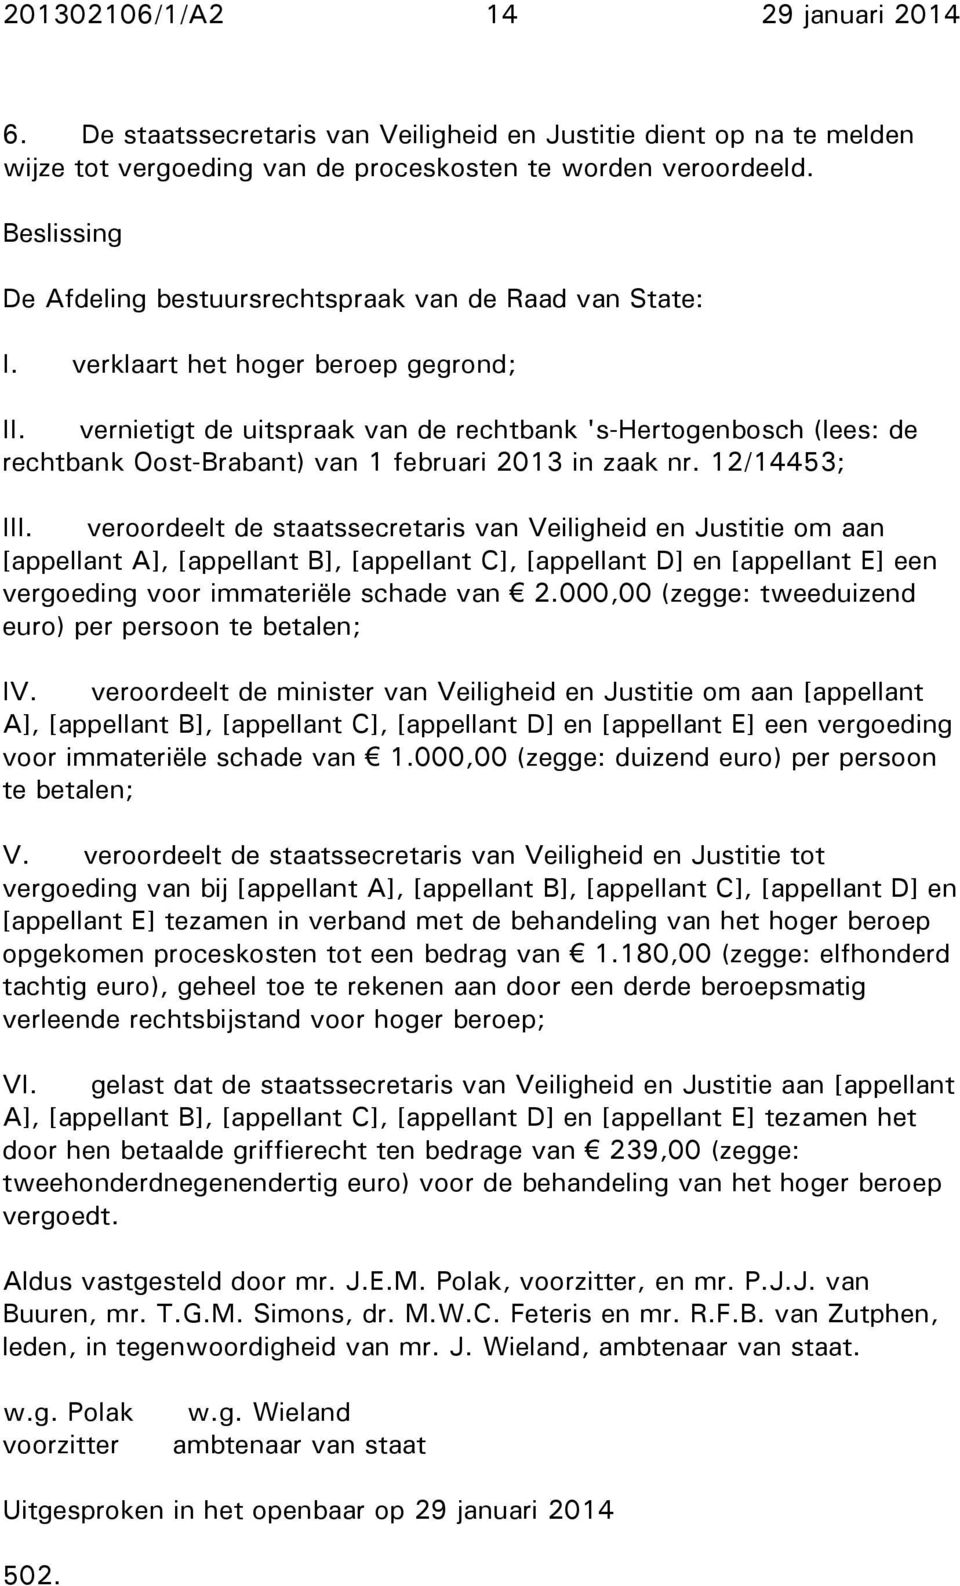 vernietigt de uitspraak van de rechtbank 's-hertogenbosch (lees: de rechtbank Oost-Brabant) van 1 februari 2013 in zaak nr. 12/14453; III.